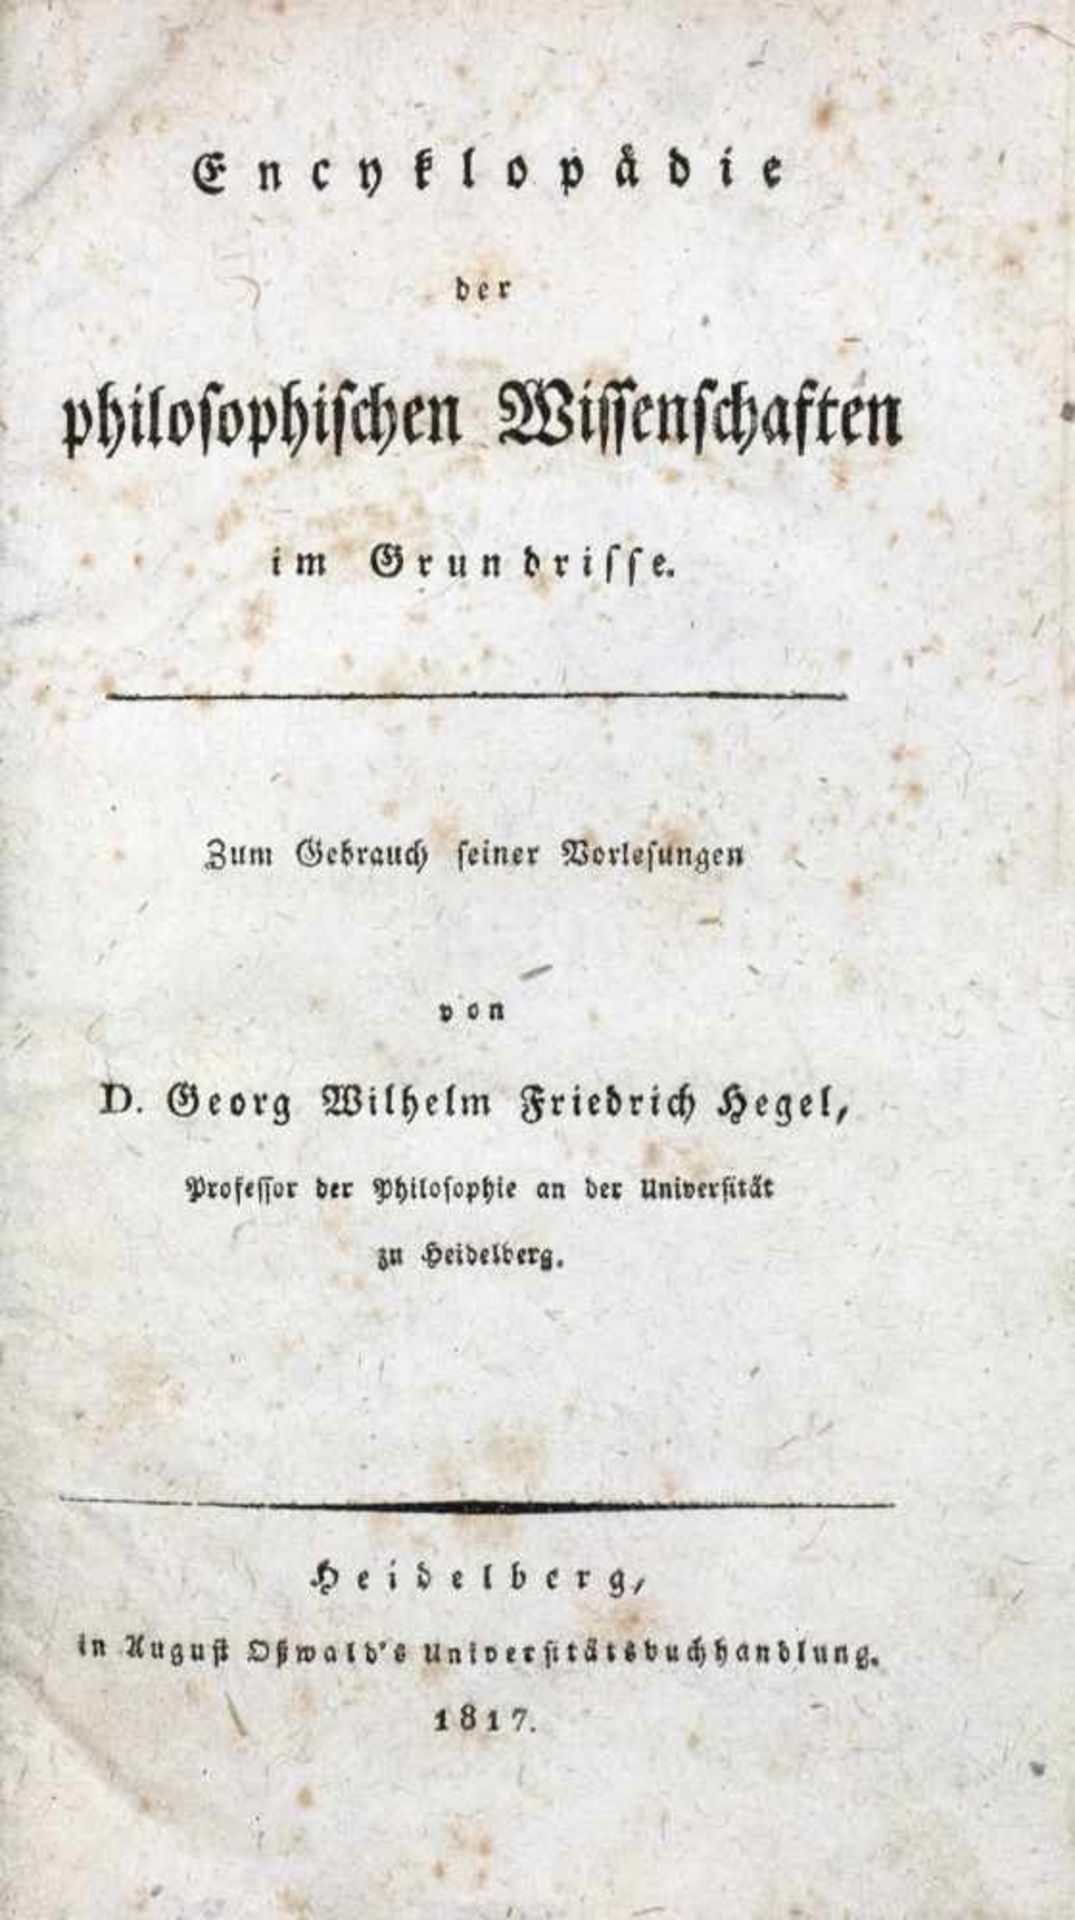 Georg Wilhelm Friedrich Hegel. Encyklopädie der philosophischen Wissenschaften im Grundrisse. Zum